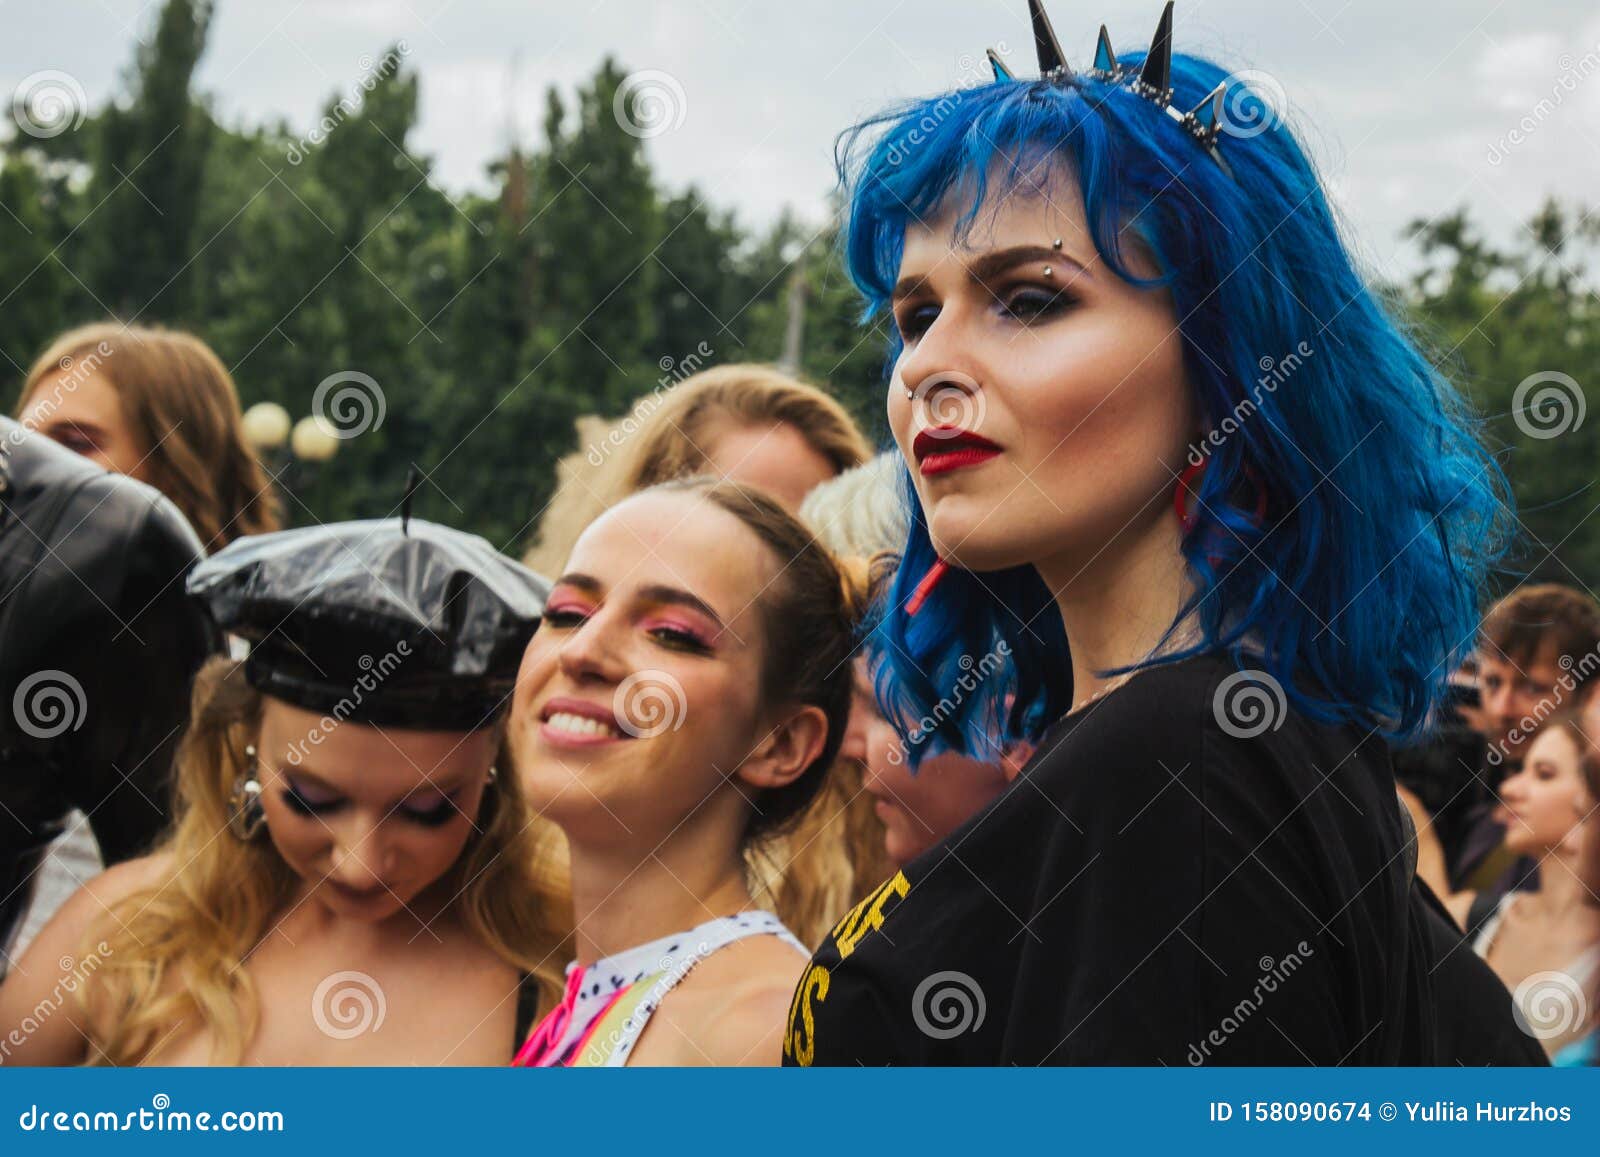 Положение трансгендерных и небинарных людей в Украине – Транс*Коалиция